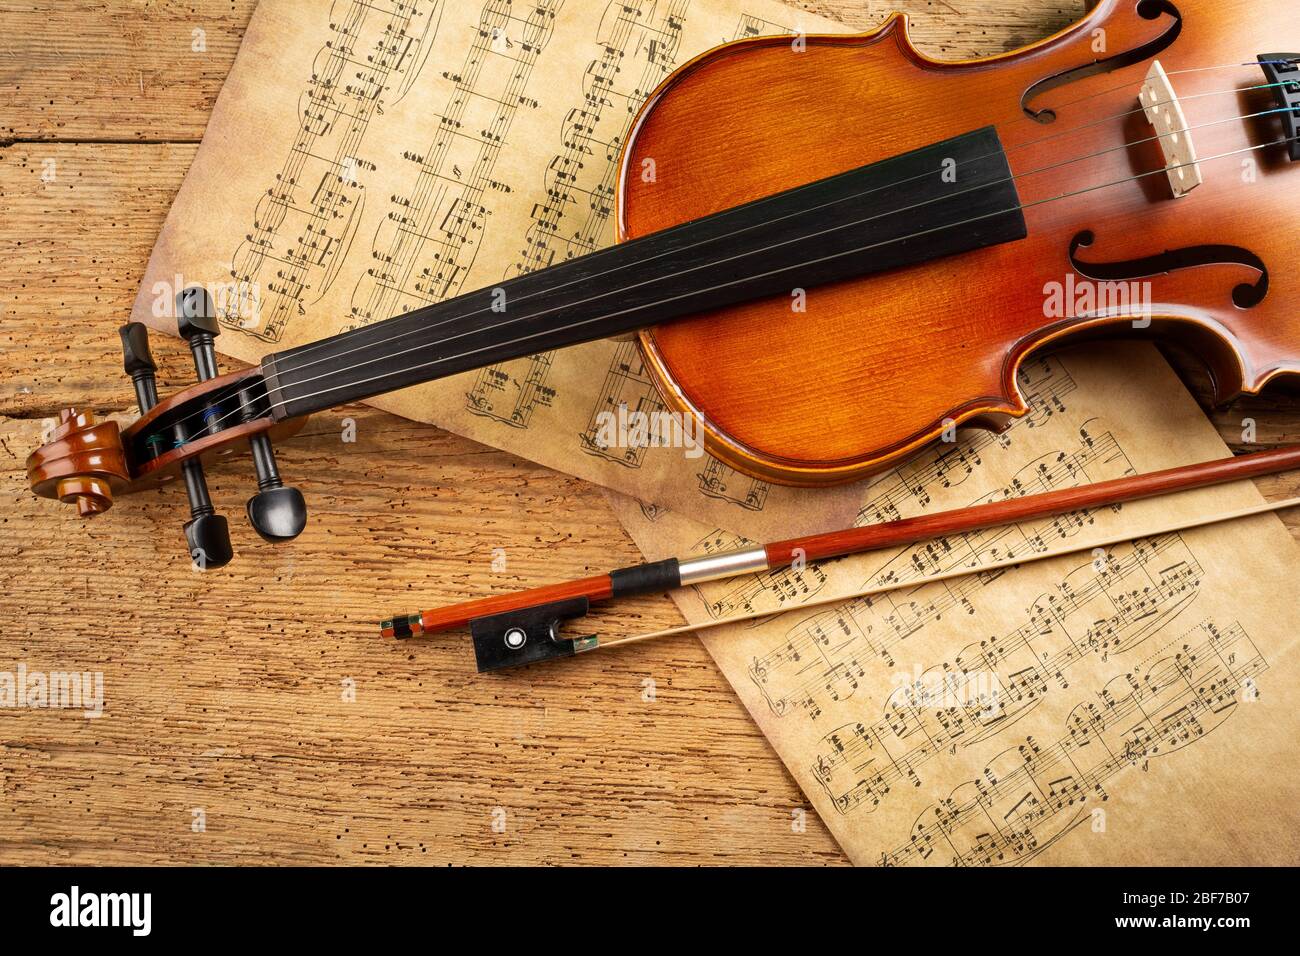 Klassische Retro-Geige-Musik-String-Instrument mit alten Noten Blatt Papier  auf alten Eichenholz Holzhintergrund. Klassische musikalische romantische  valentines da Stockfotografie - Alamy